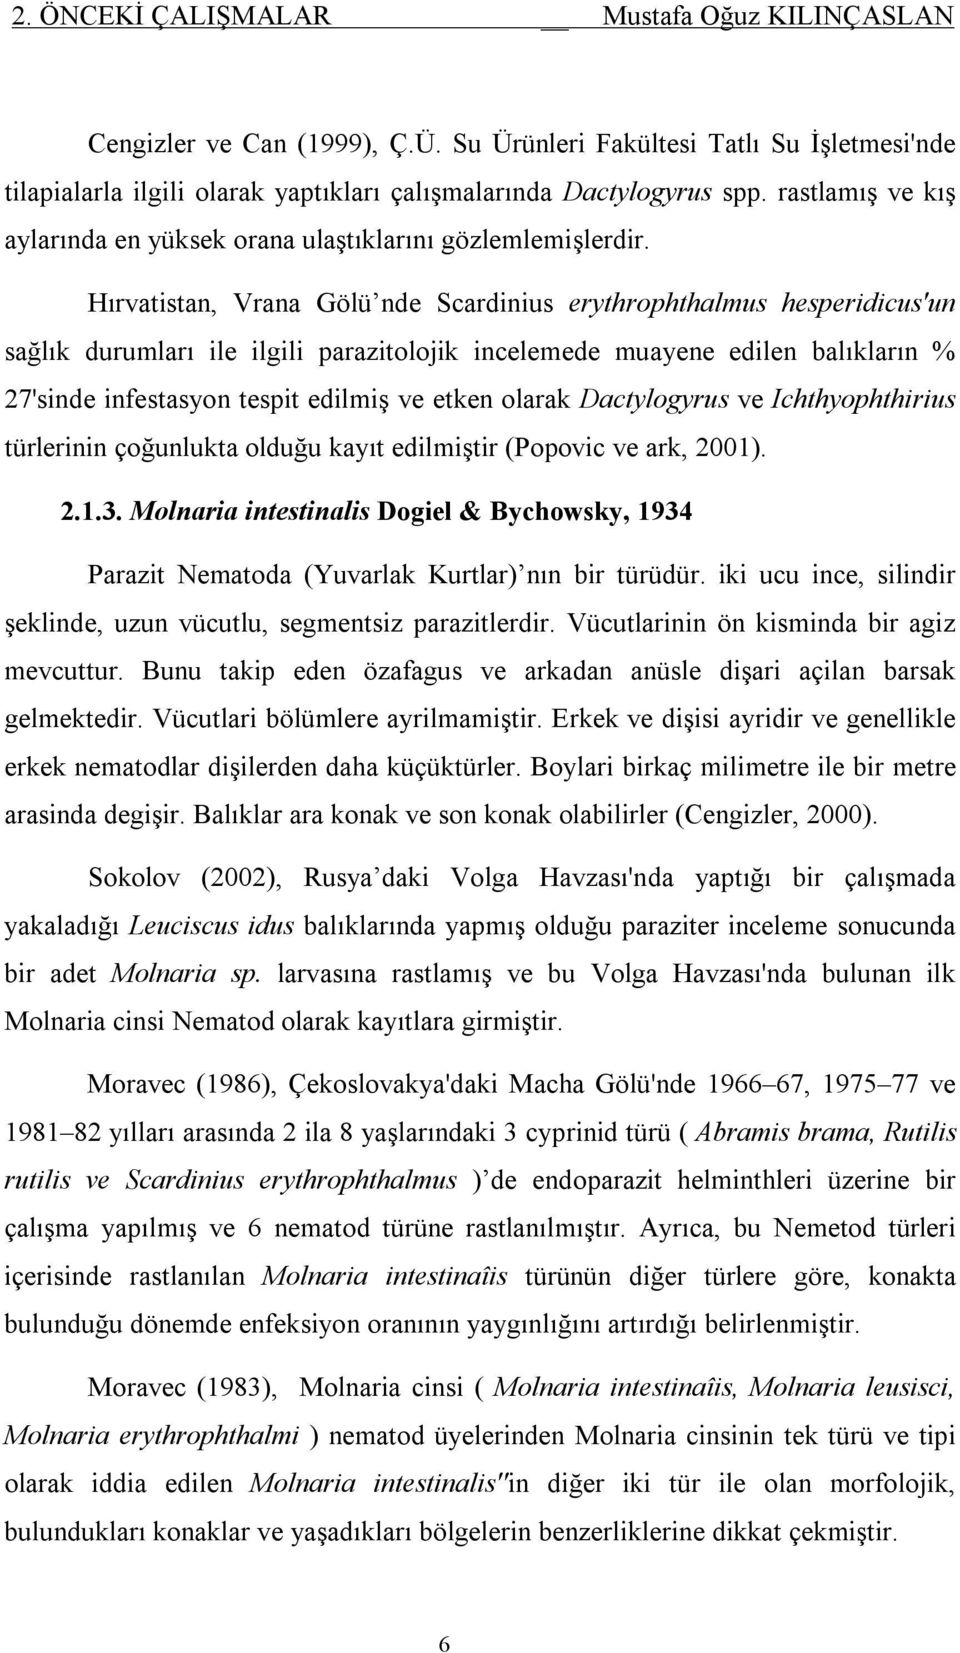 Hırvatistan, Vrana Gölü nde Scardinius erythrophthalmus hesperidicus'un sağlık durumları ile ilgili parazitolojik incelemede muayene edilen balıkların % 27'sinde infestasyon tespit edilmiş ve etken